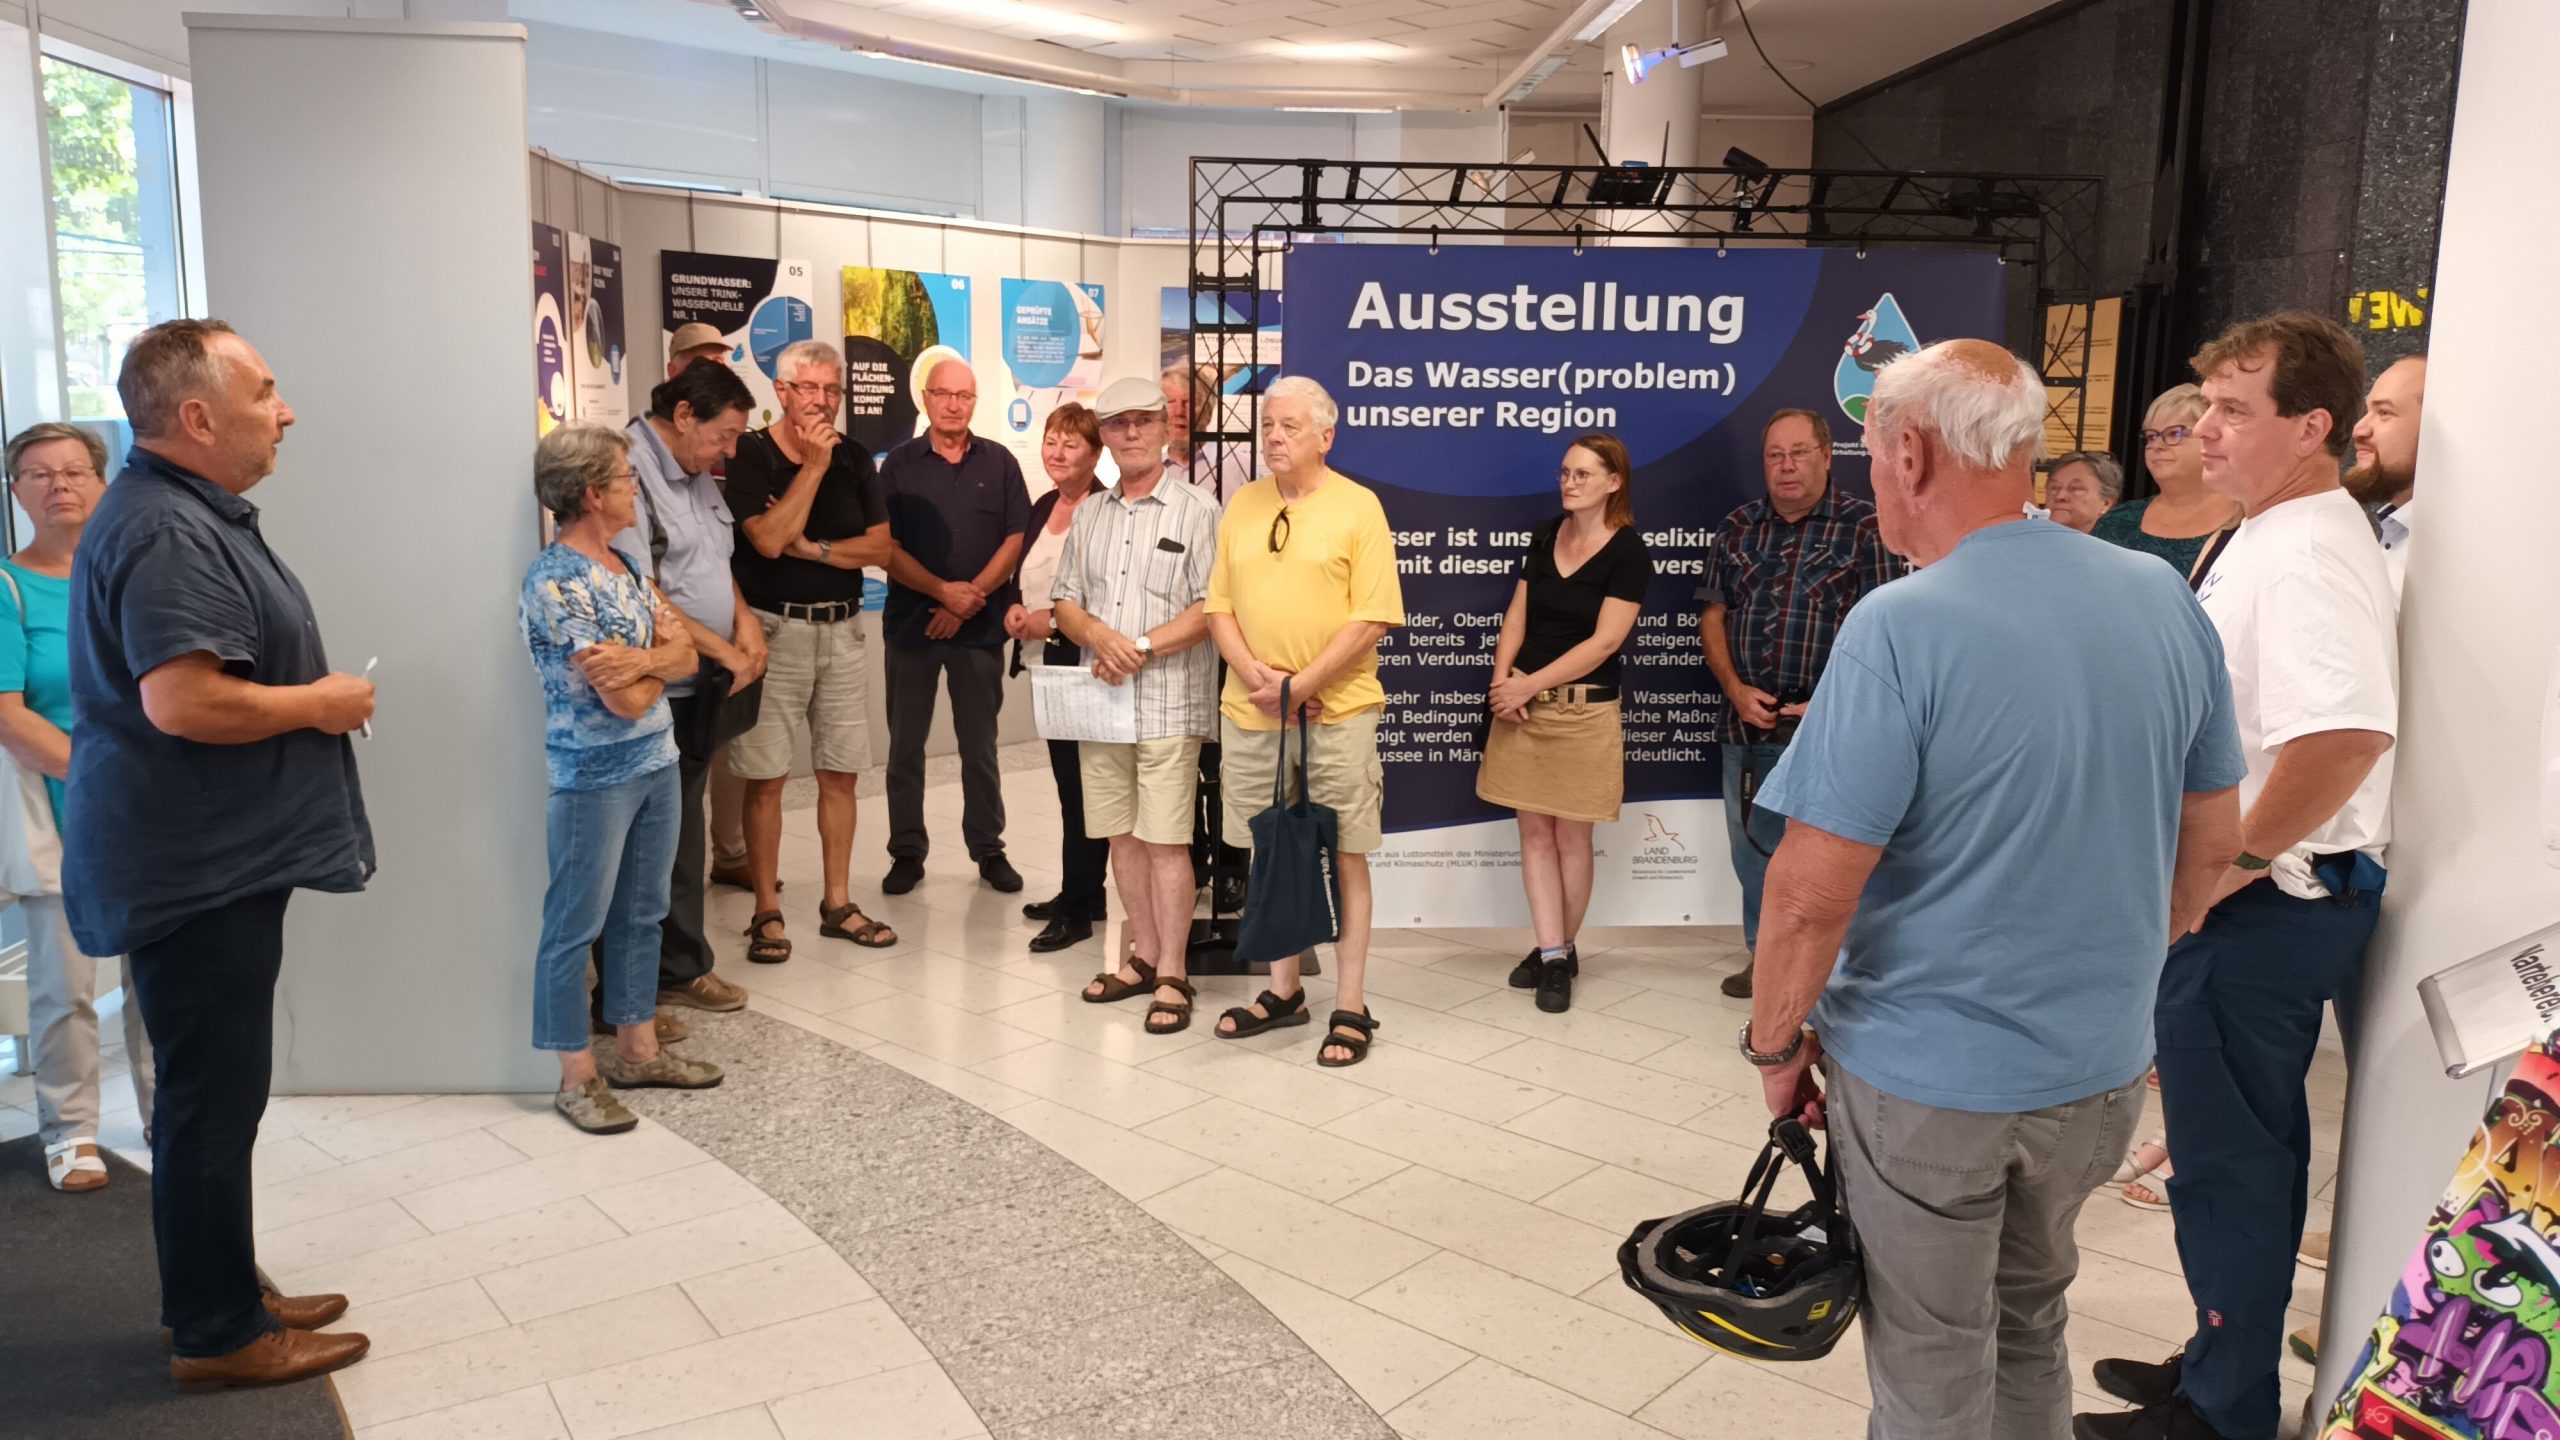 Eröffnung der Ausstellung "Das Wassewr(problem) unserer Region" im Haus der Stadtverwaltung